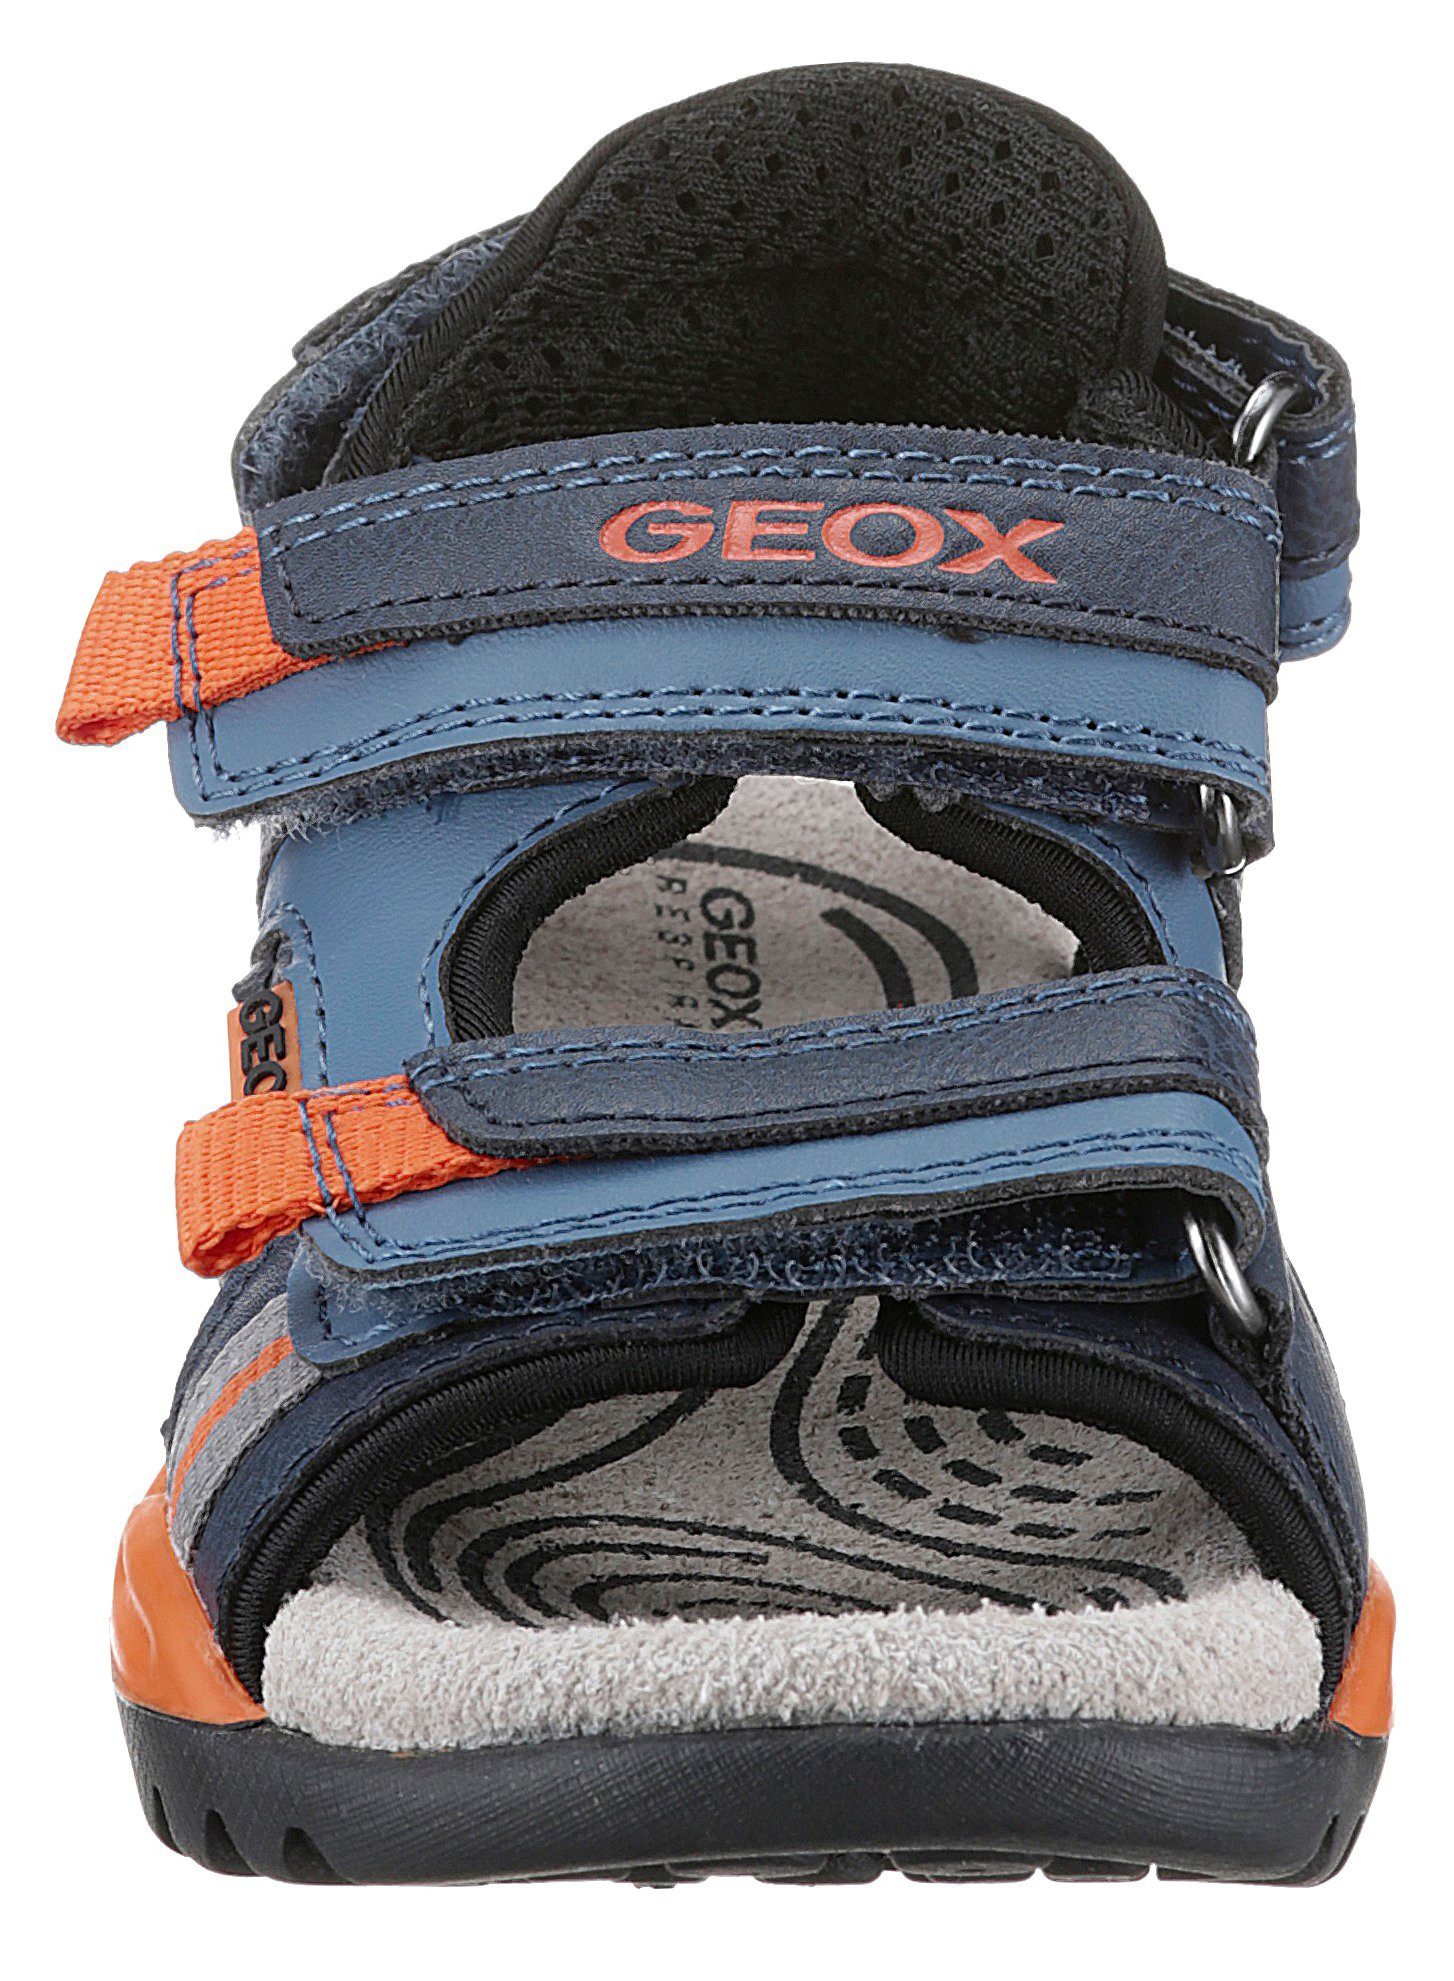 Geox J BOY Blau mit Sandale zusätzlichem AVIO/ORANGE) Fersenklettverschluss BOREALIS (DK